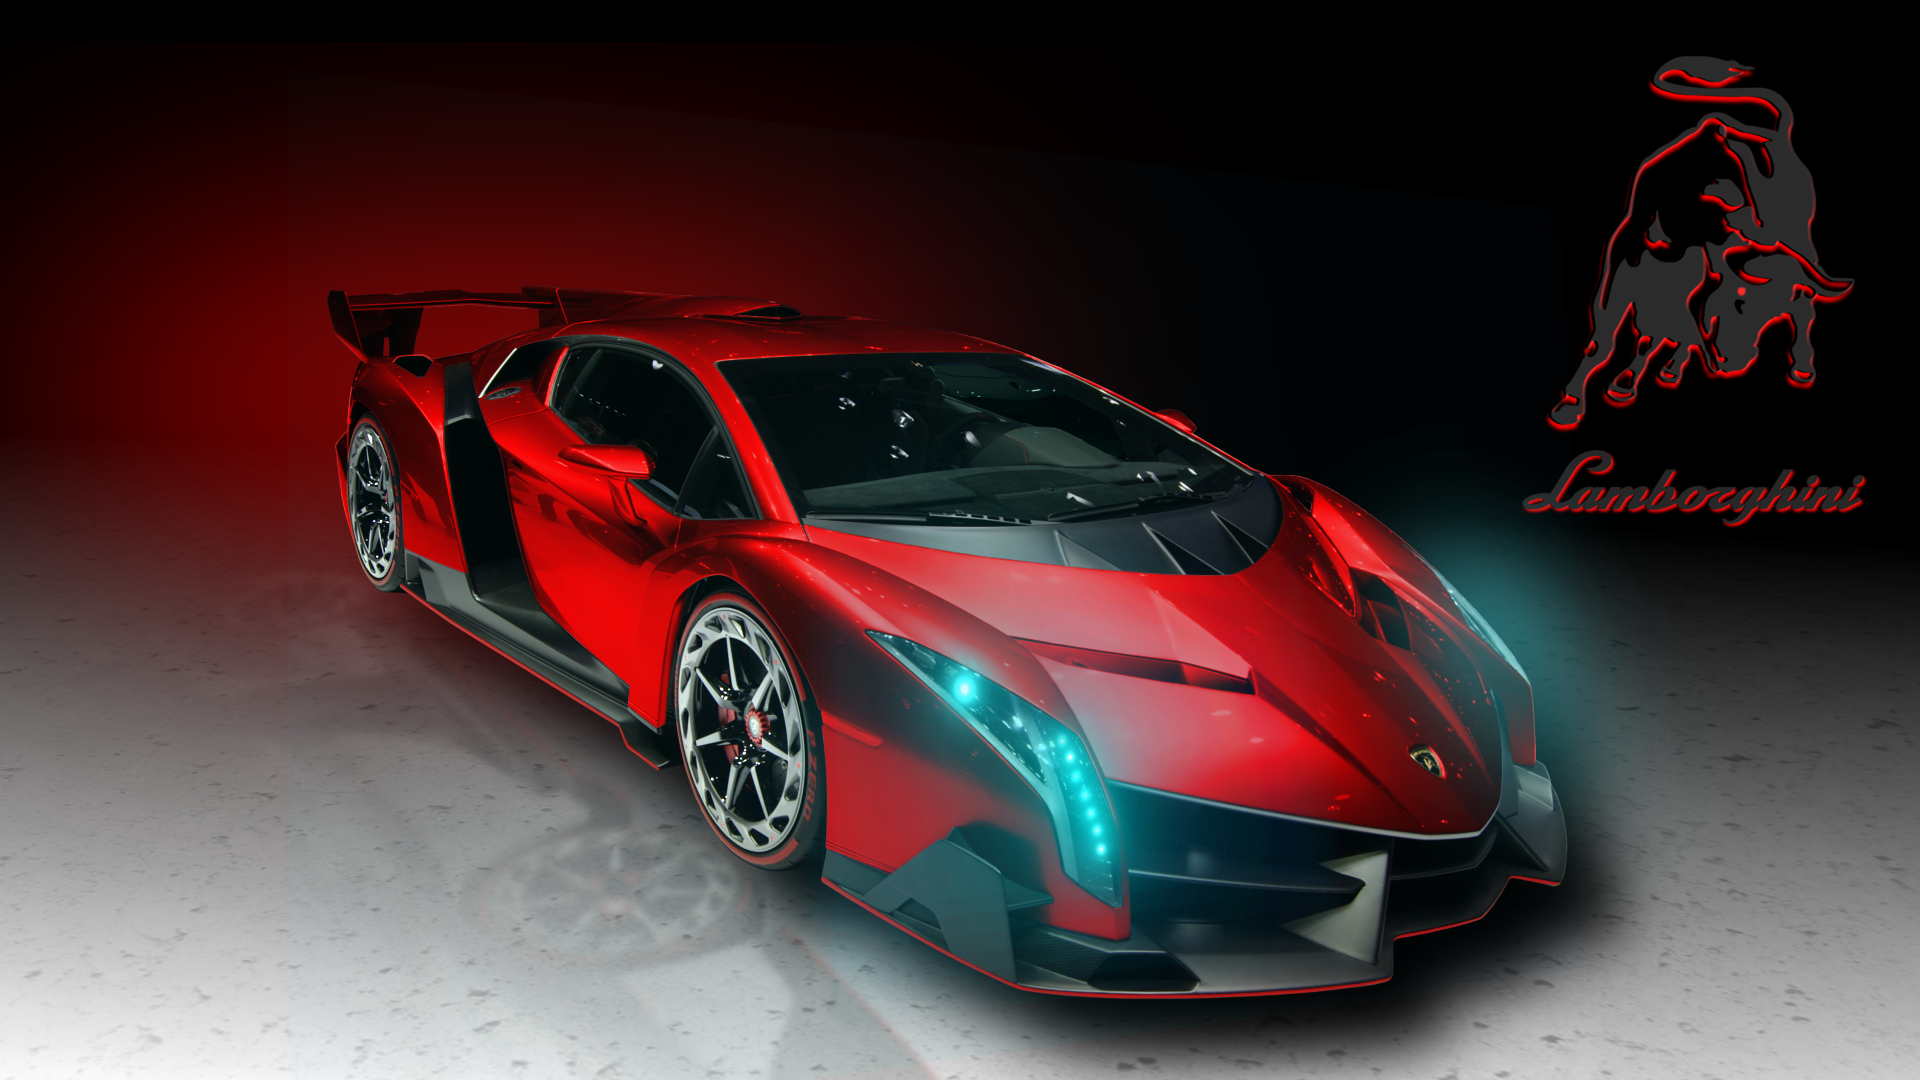 Lamborghini Veneno Red Art Exclusive HD Wallpaper